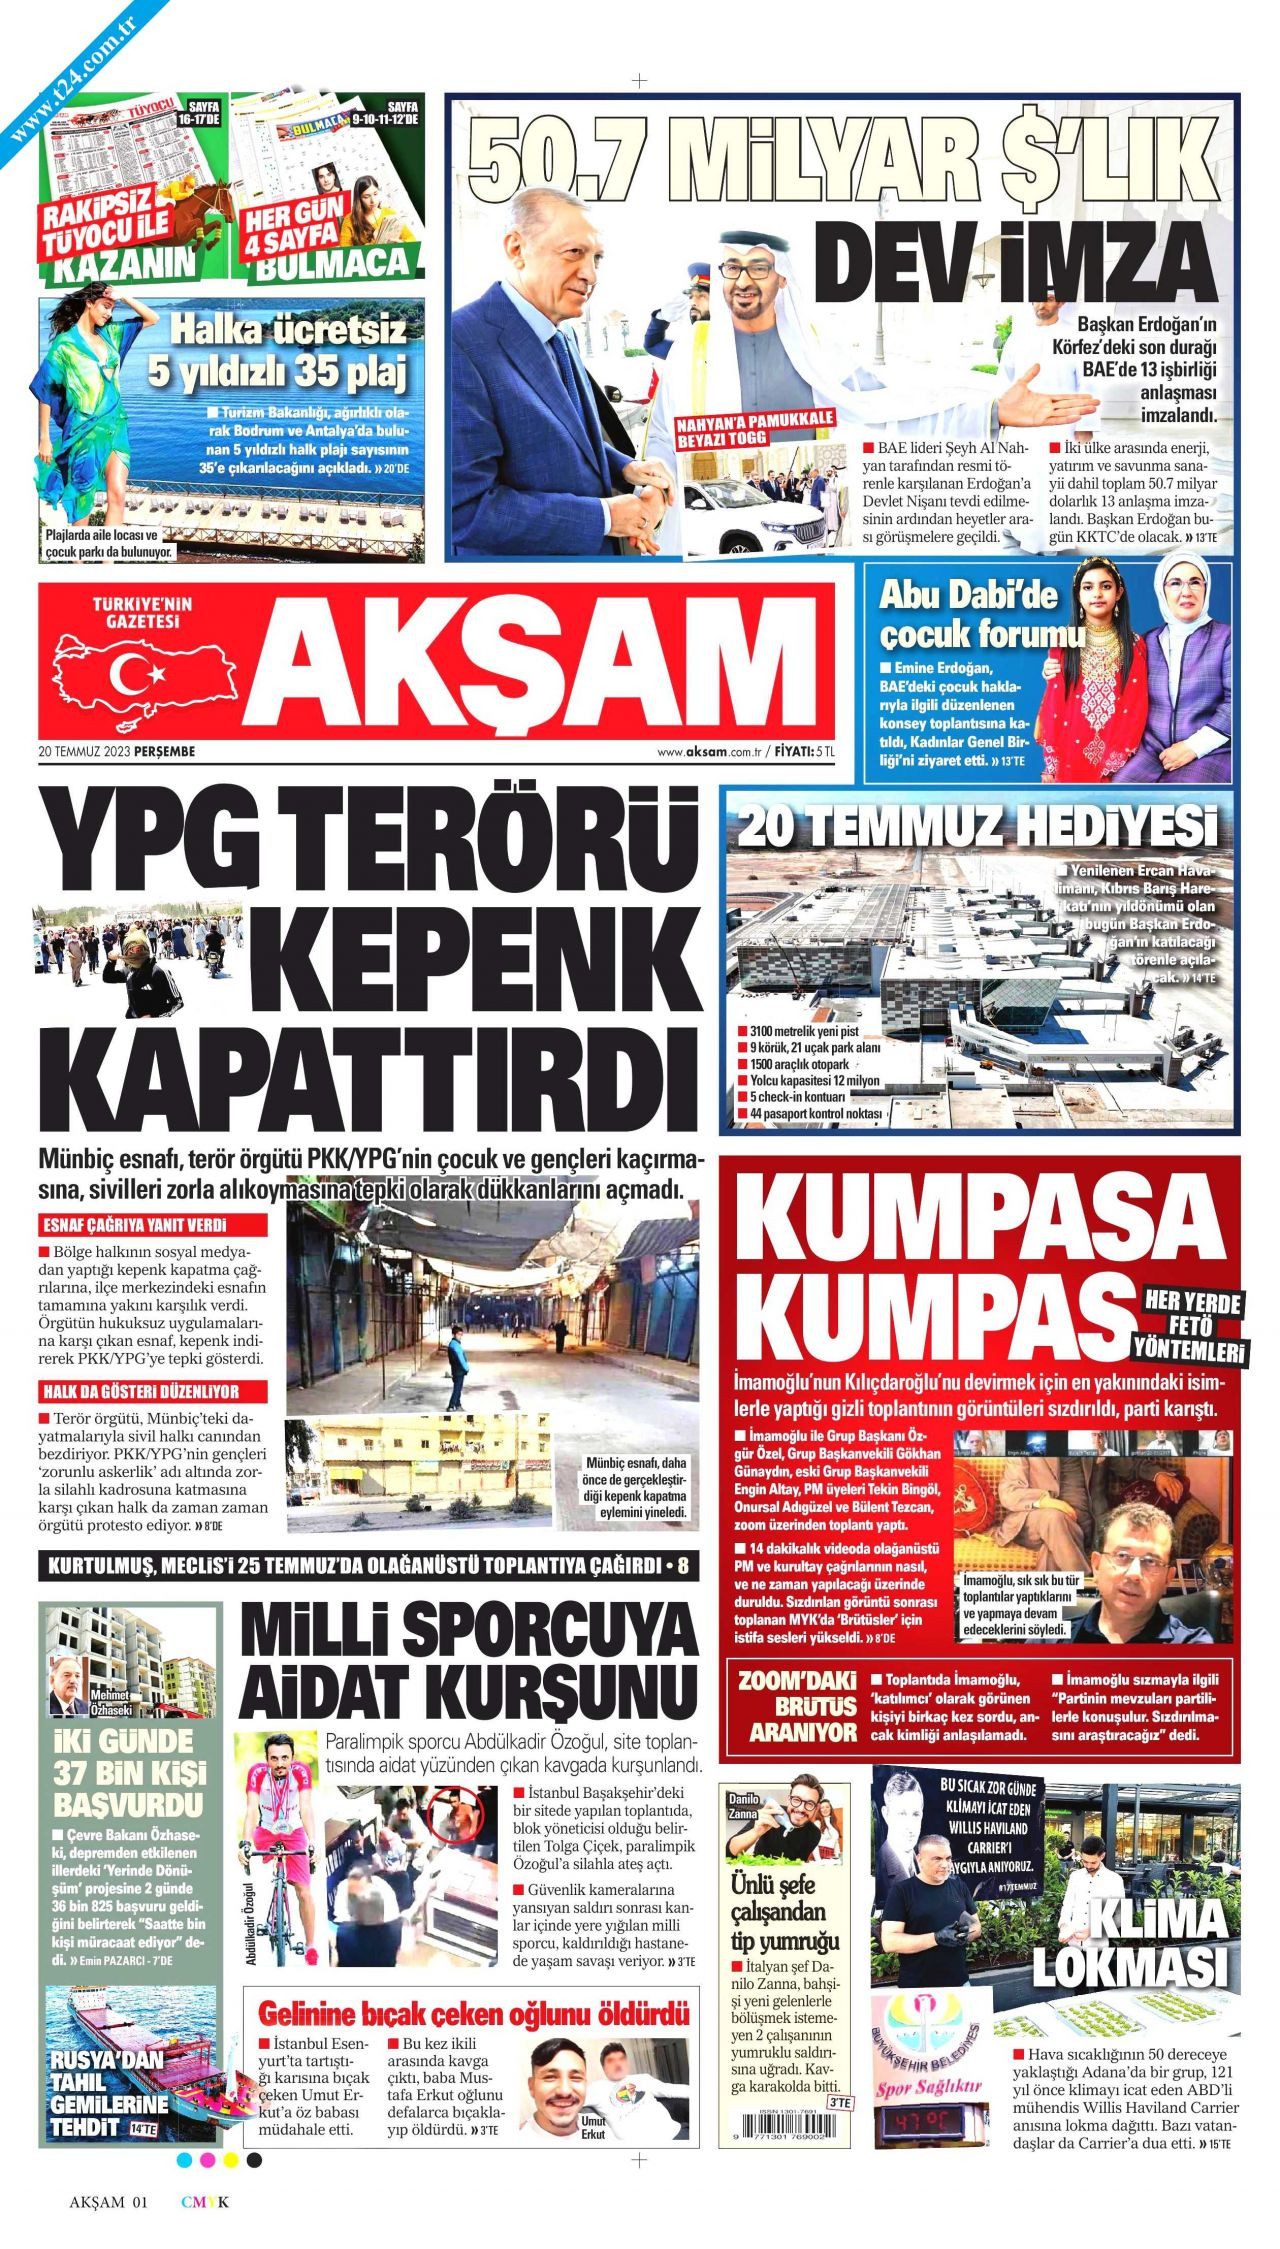 Gazeteler, CHP’lilerin sızdırılan toplantısını manşetlerinde nasıl gördü? - Sayfa 4